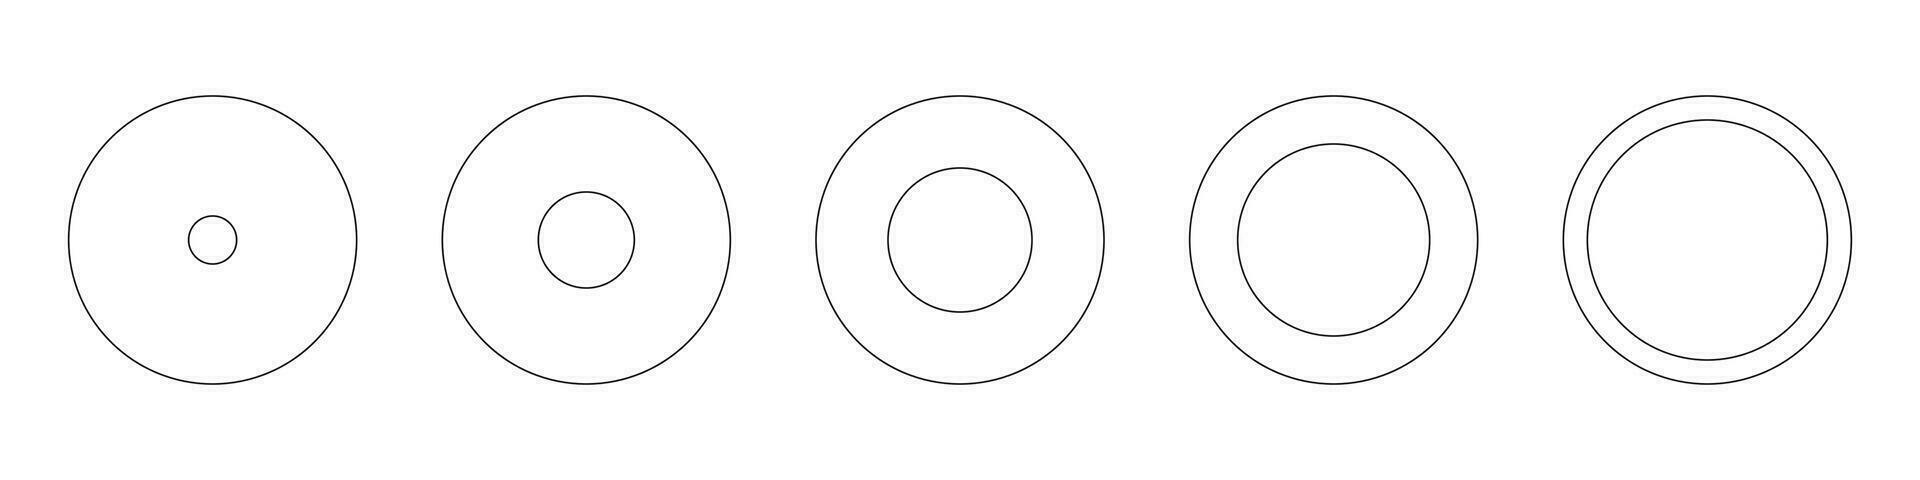 entrenamiento ruedas, vida redondo espacios en blanco. diagramas infografía colocar. circulo grafico línea Arte. gráfico iconos contorno rosquilla cartas geométrico sencillo elemento. vector ilustración.